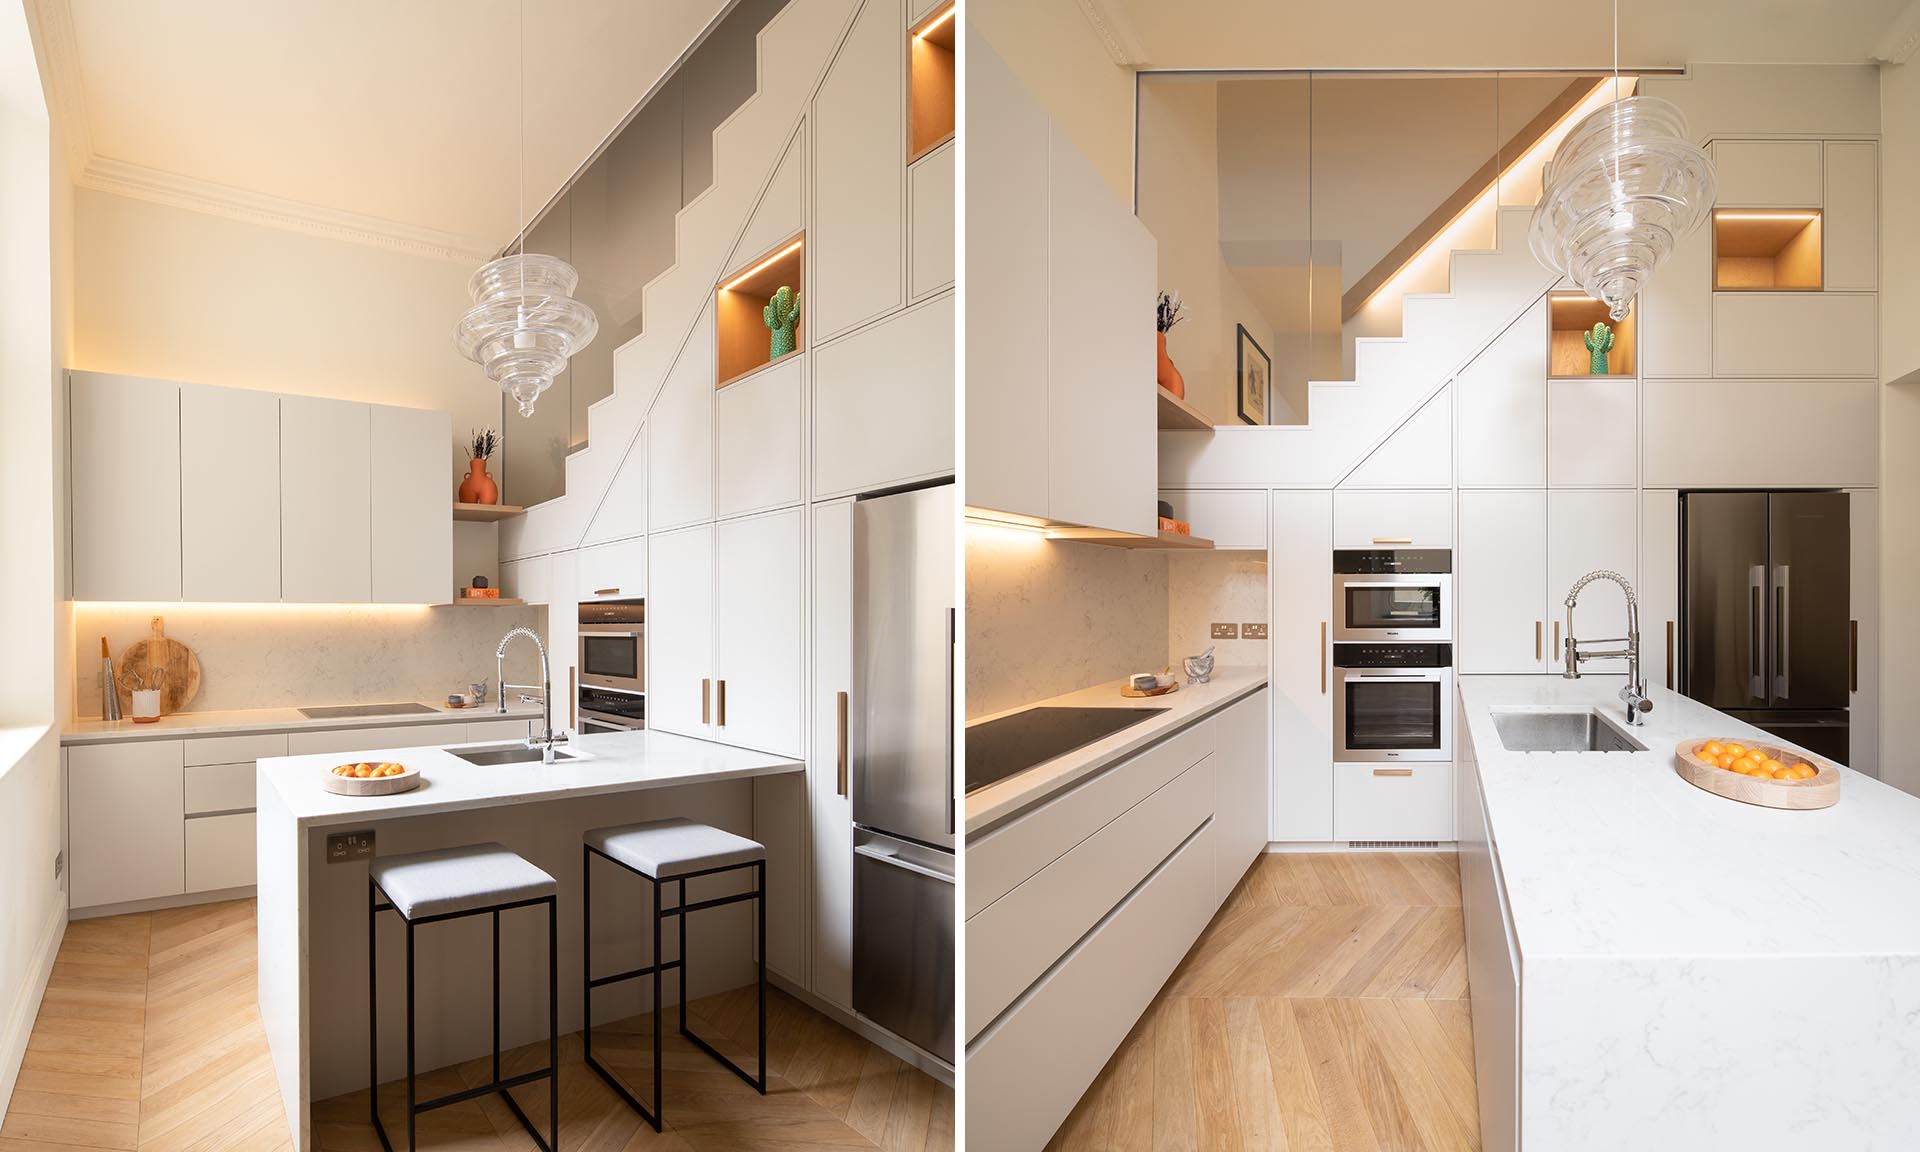 طراحی داخلی آشپزخانه با کابینت های مدرن و سفید